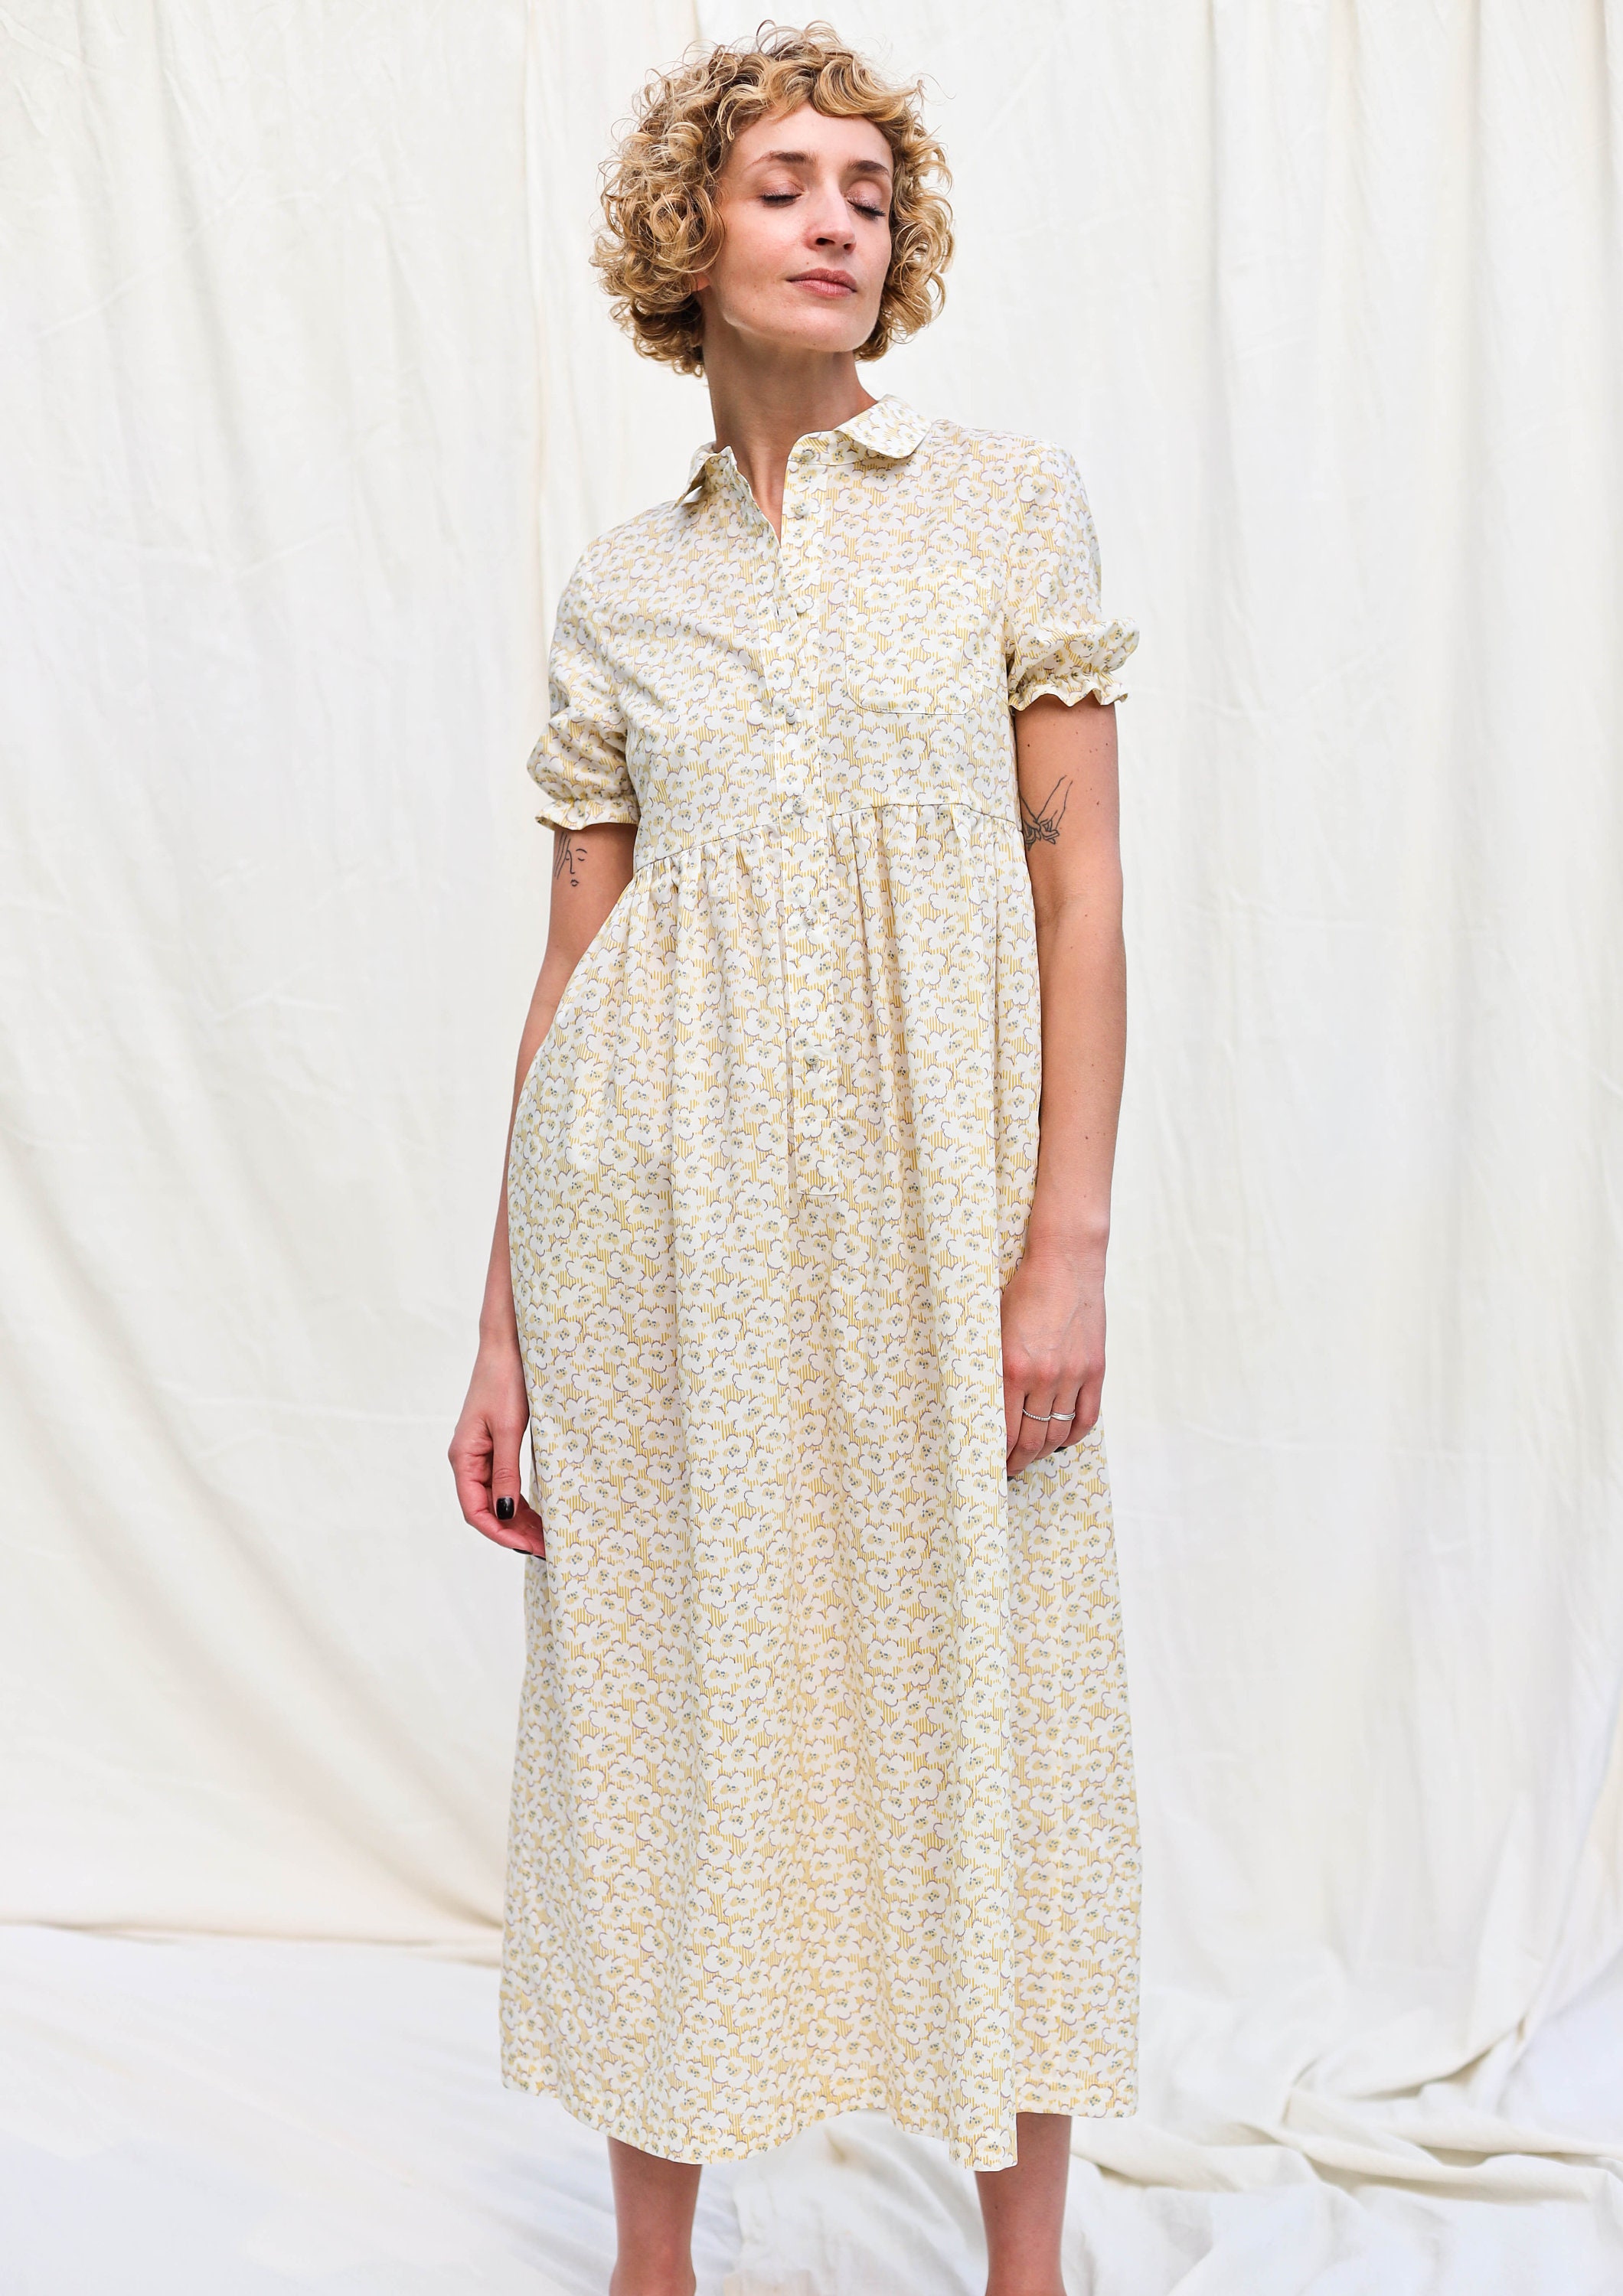 Flowy silky cotton summer dress DAZE / OFFON Clothing | Etsy